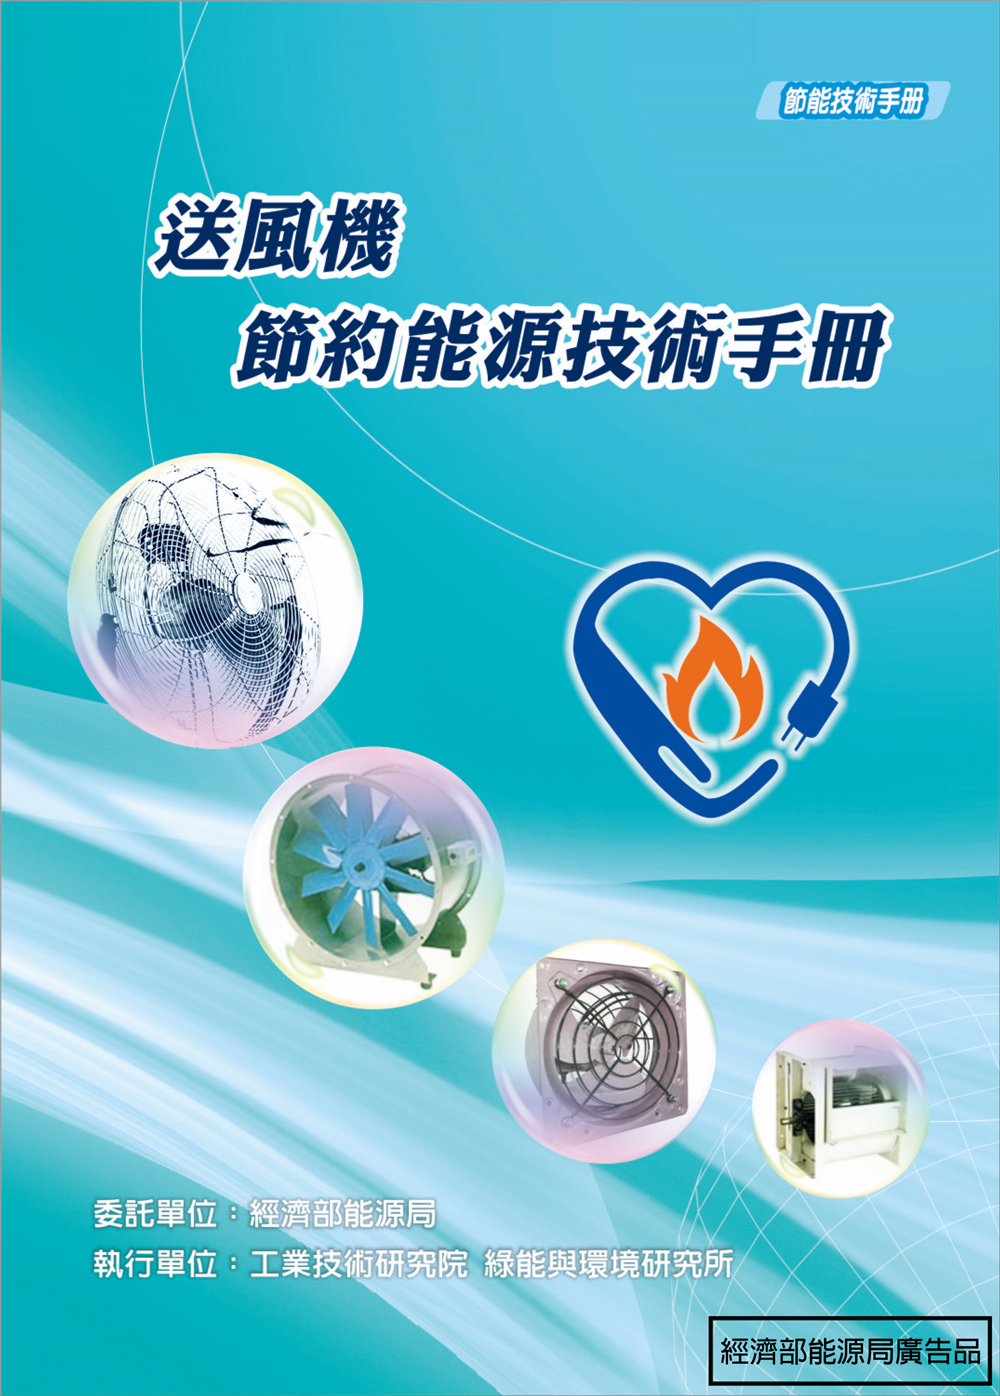 送風機節約能源技術手冊 的封面